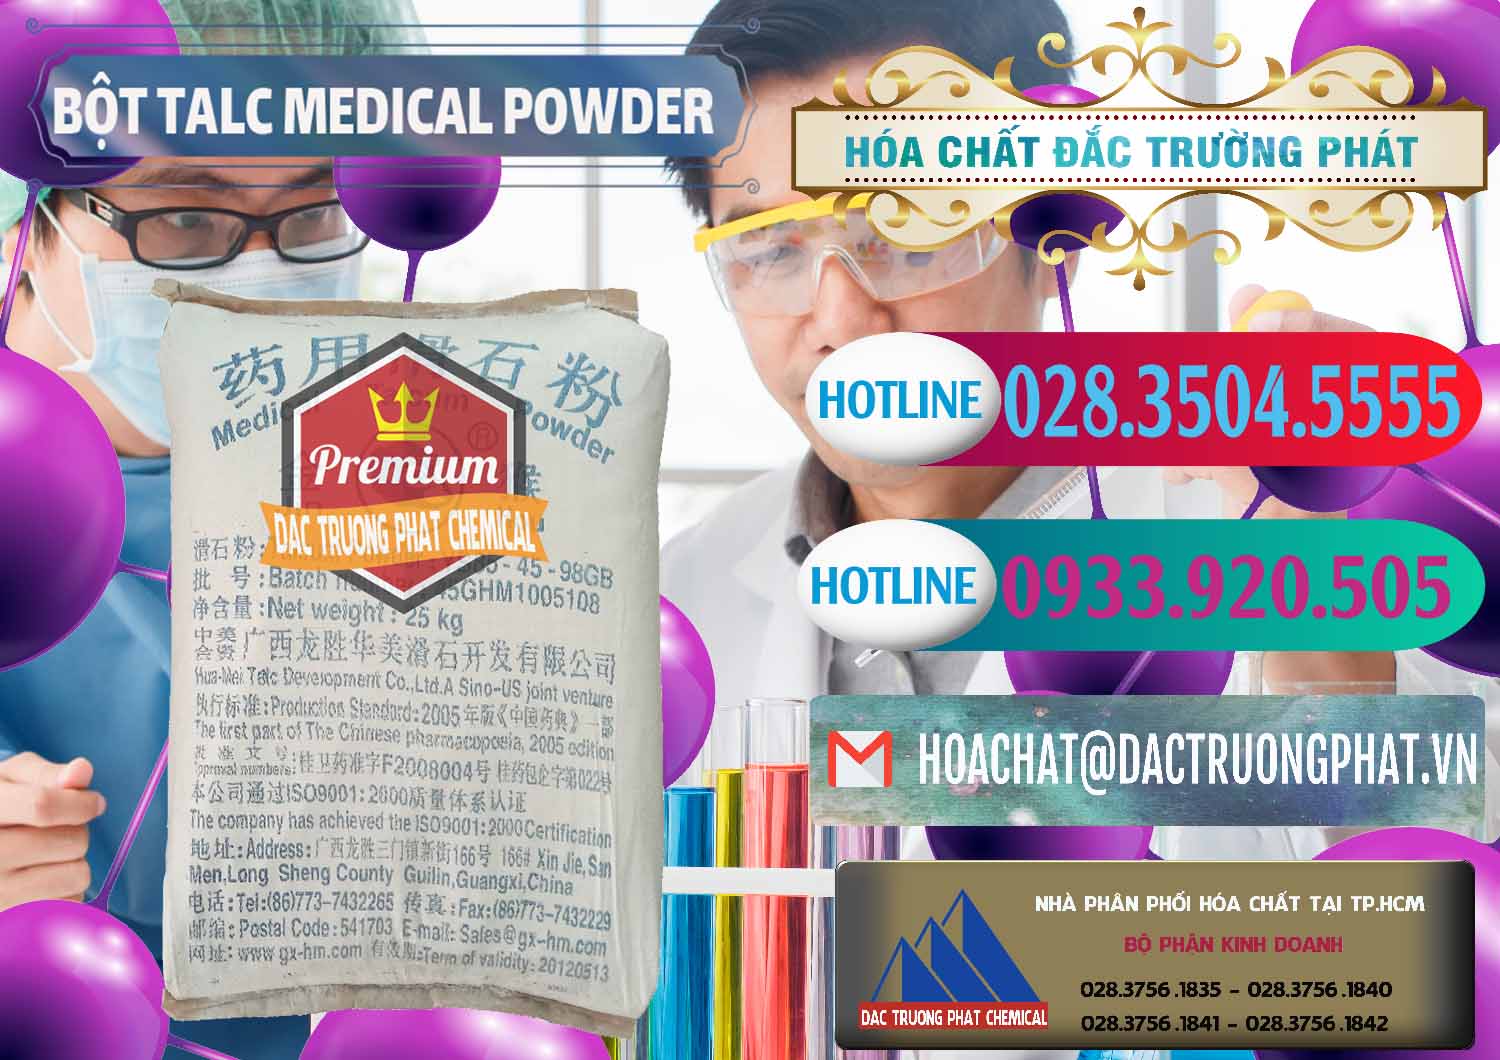 Cty chuyên bán và cung ứng Bột Talc Medical Powder Trung Quốc China - 0036 - Nhà phân phối ( bán ) hóa chất tại TP.HCM - truongphat.vn